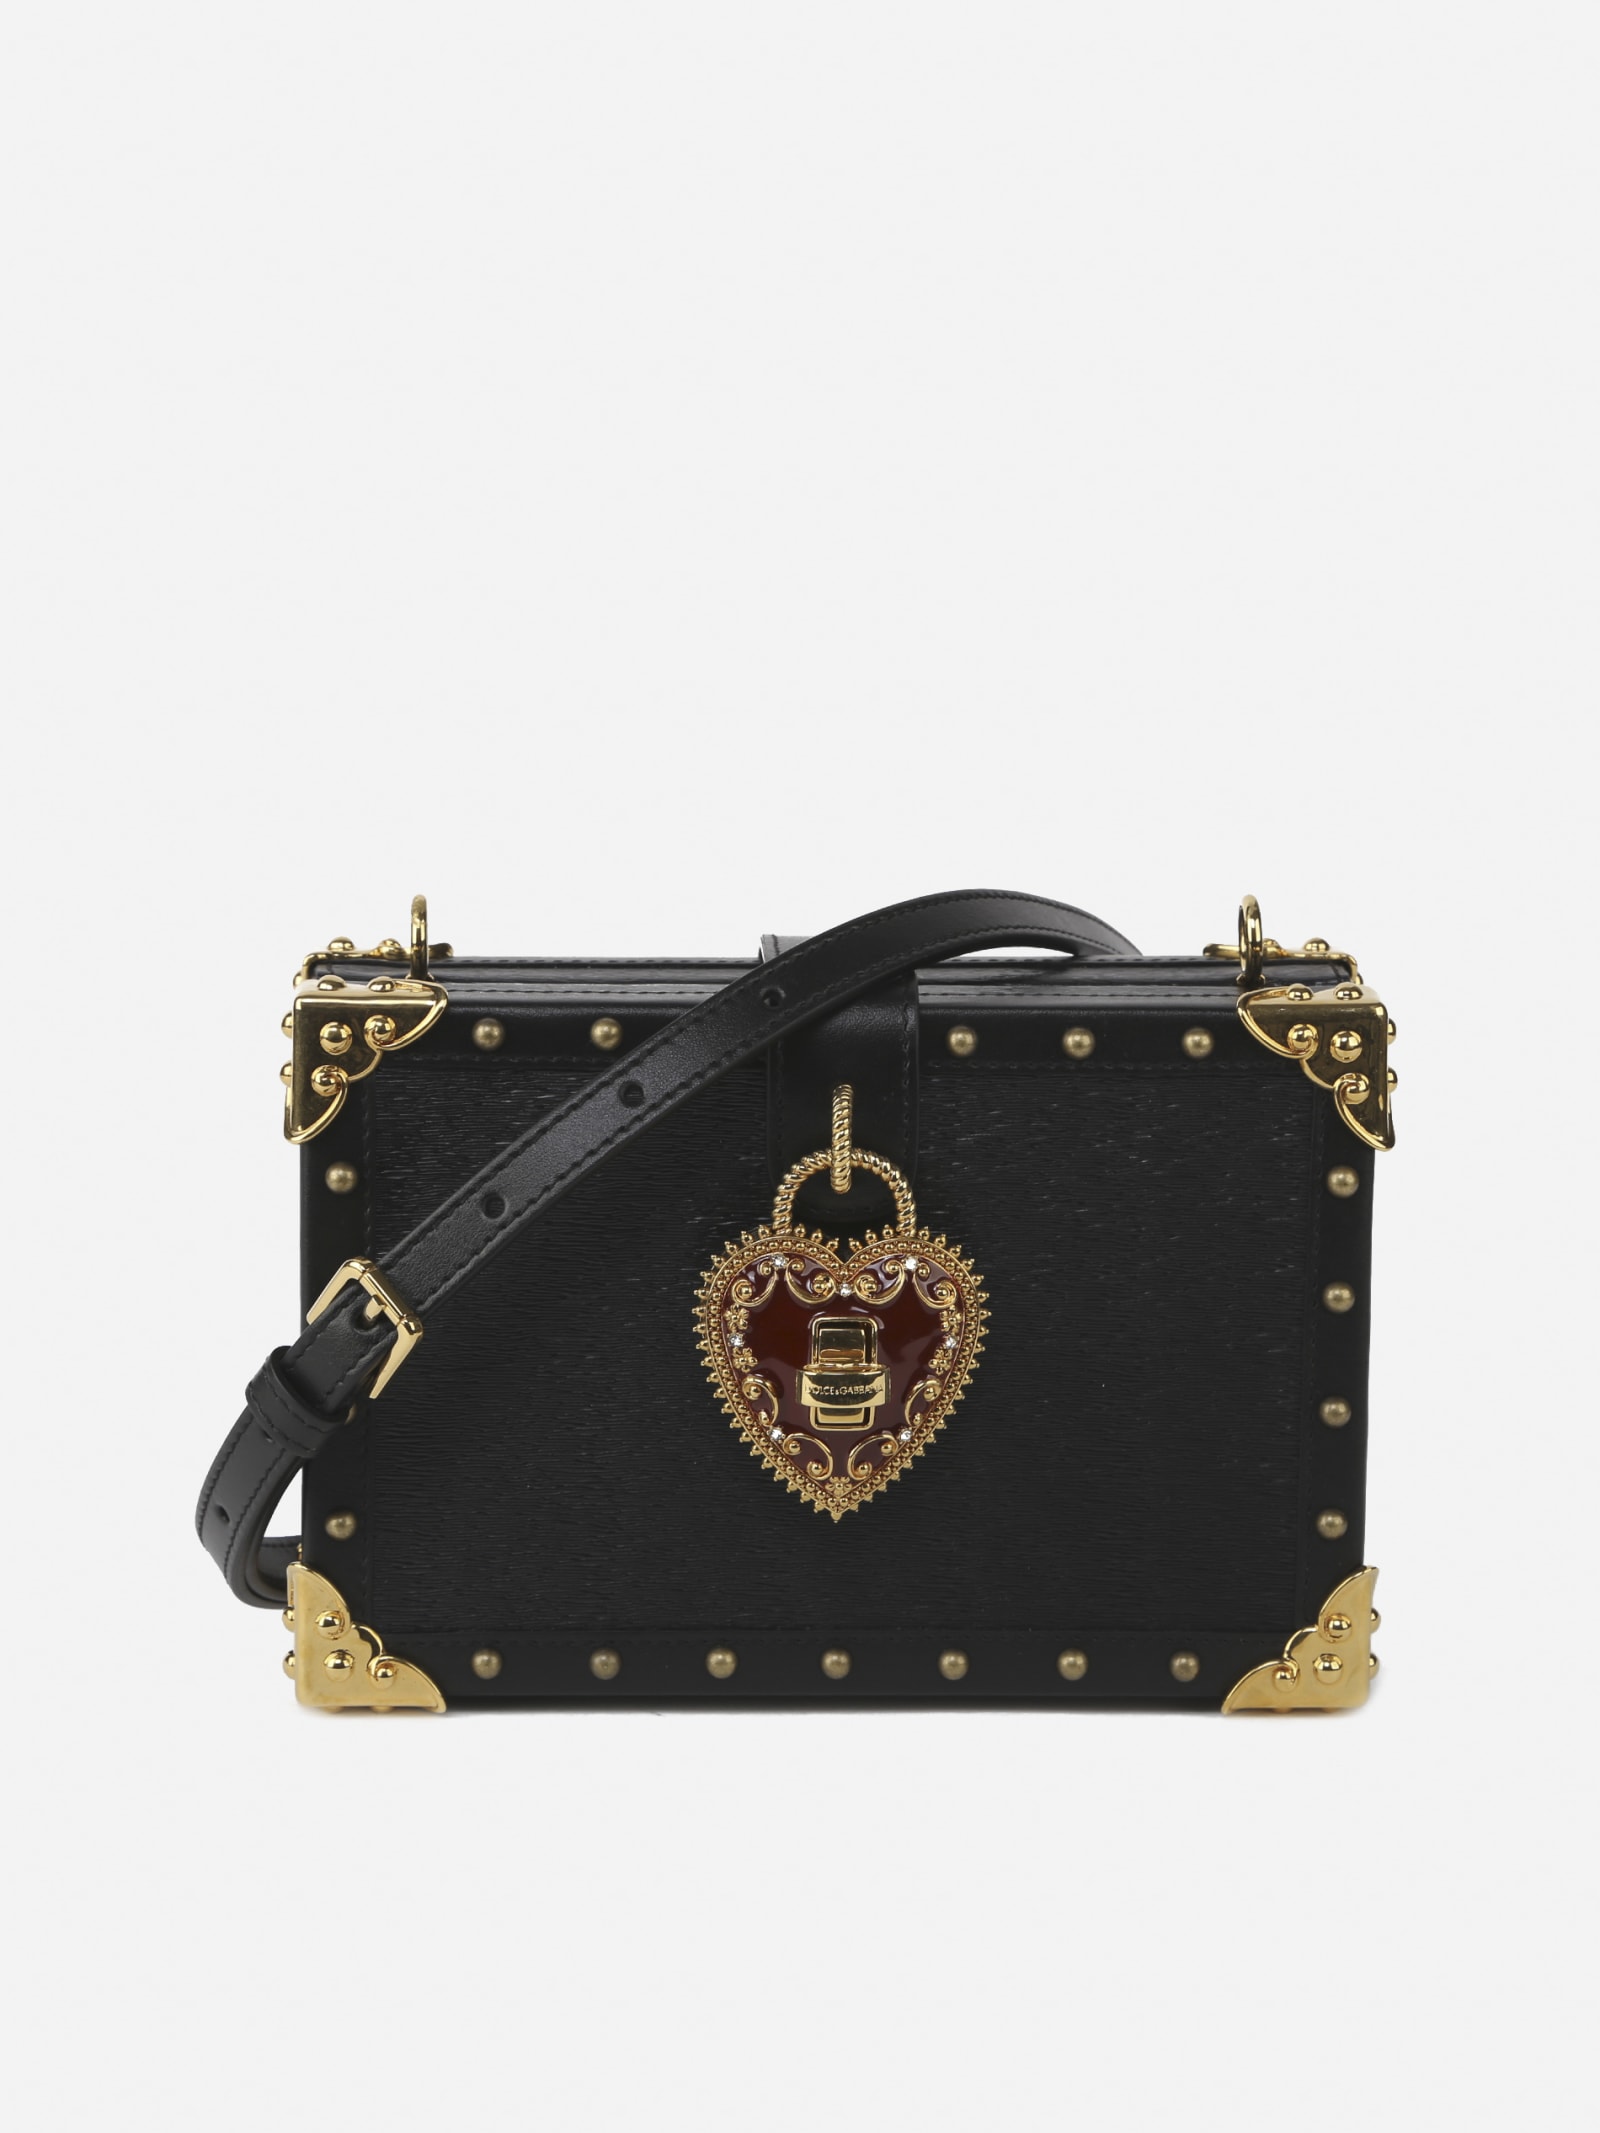 Dolce & Gabbana My Heart Leather Bag